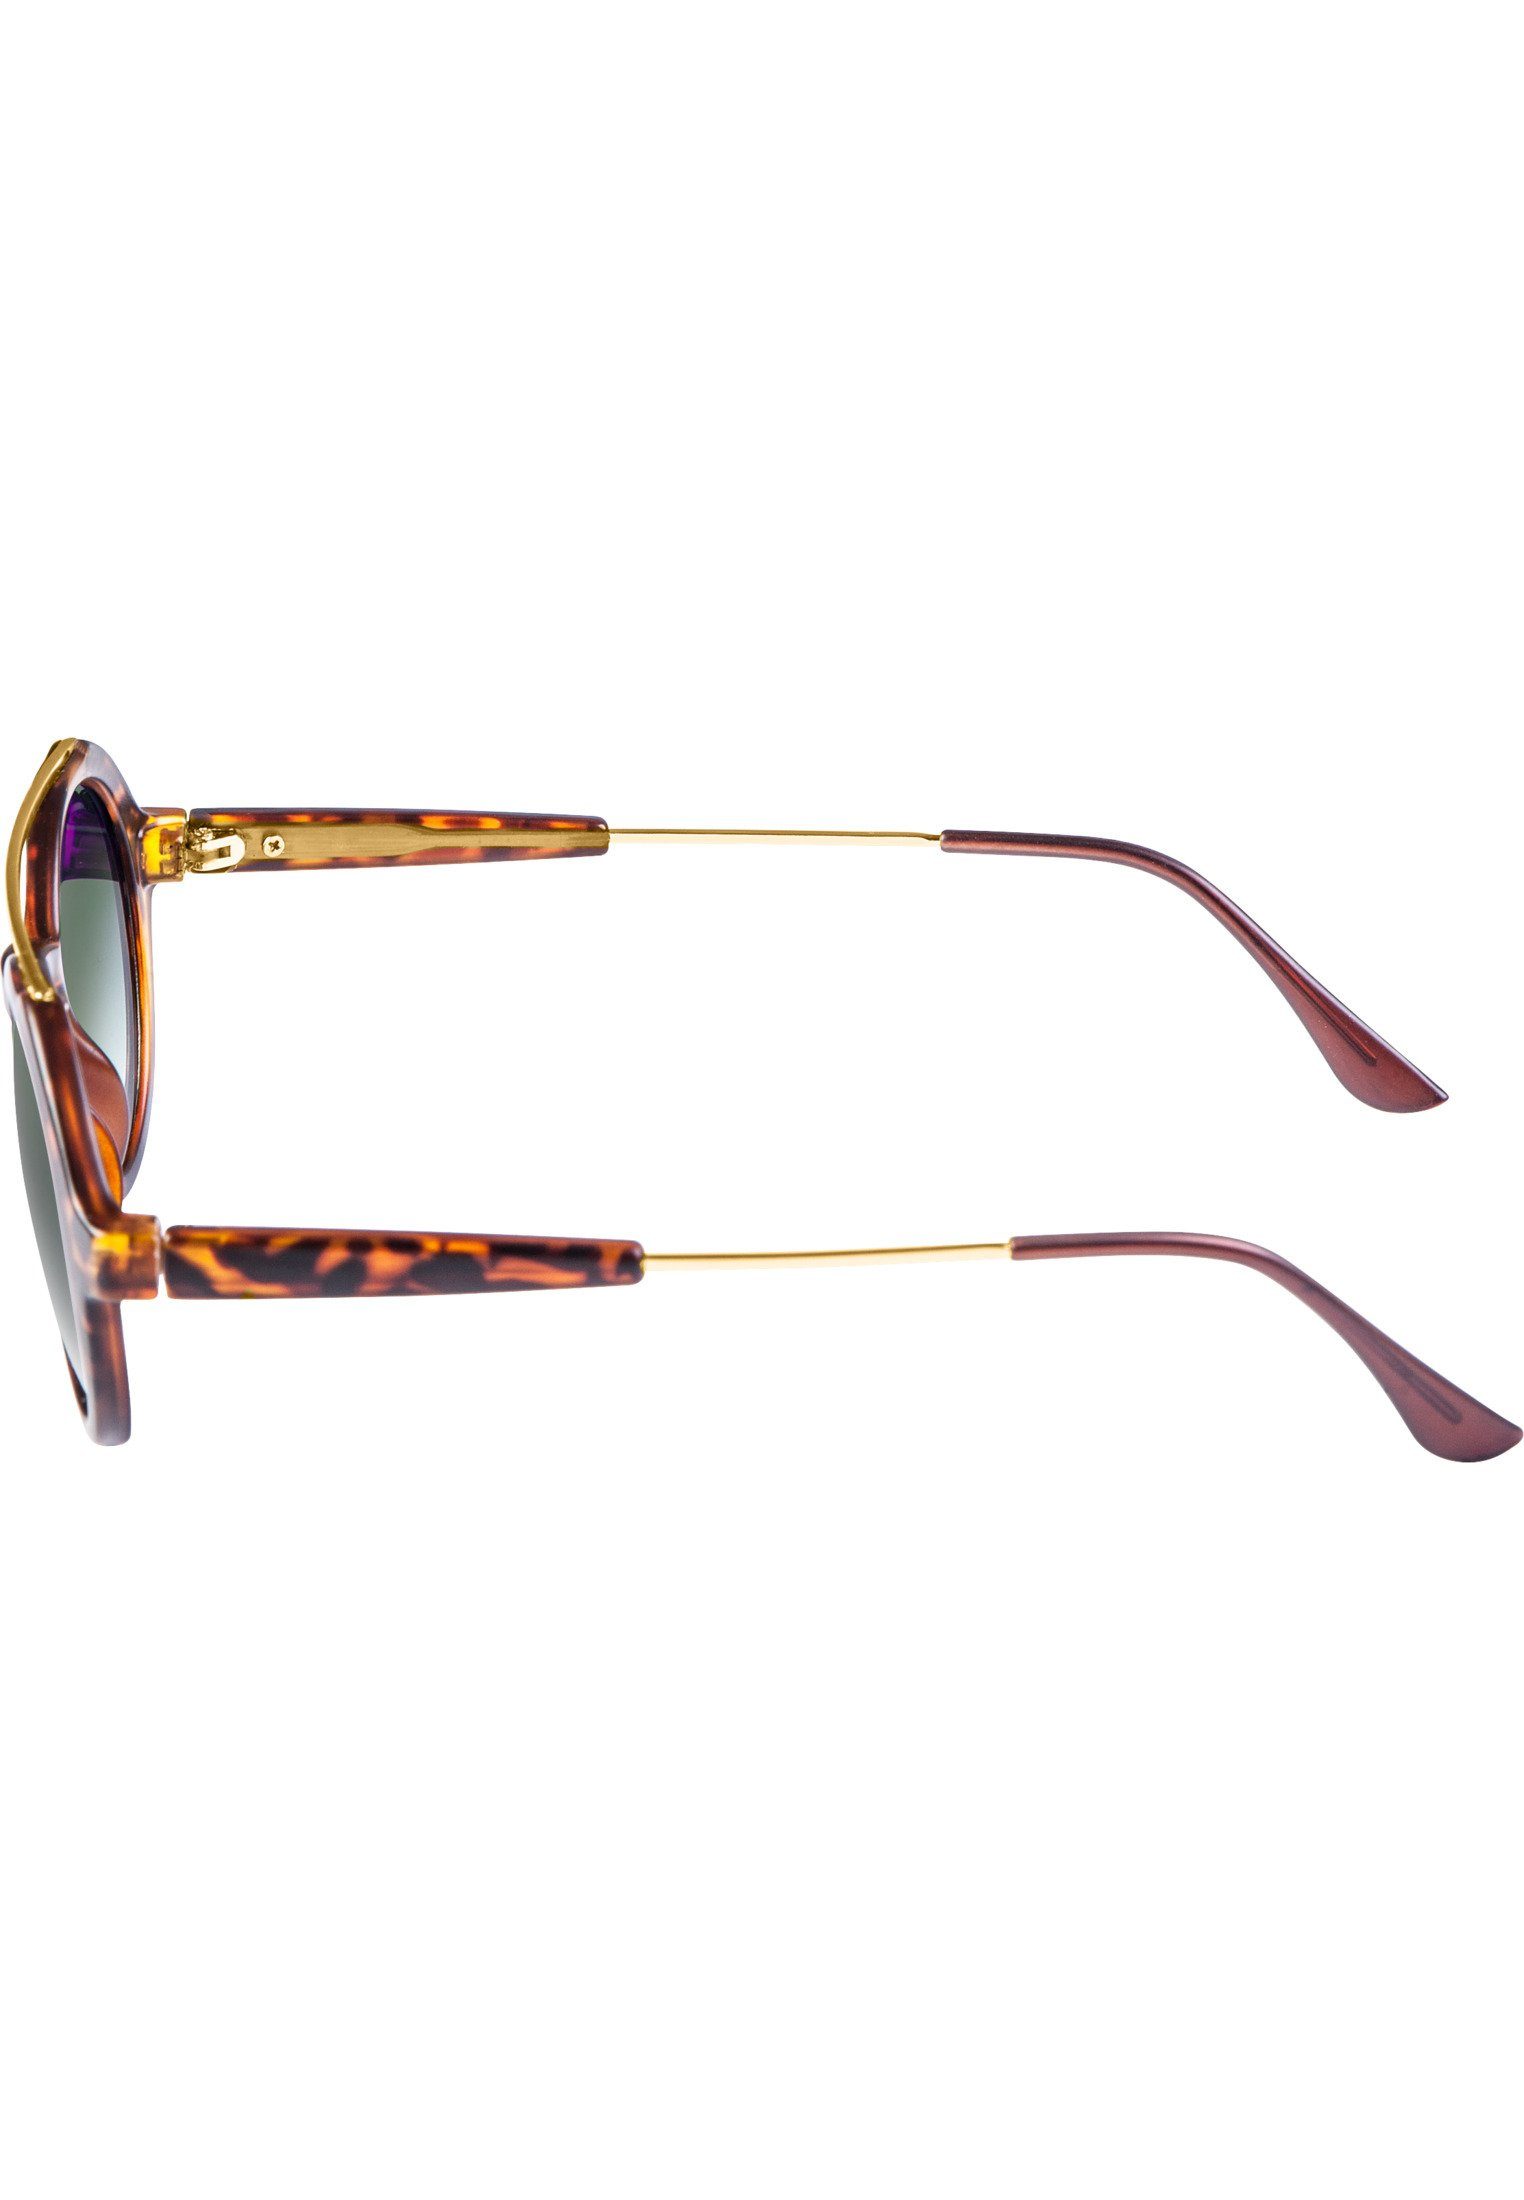 Space Sonnenbrille Retro havanna/green Accessoires MSTRDS Sunglasses